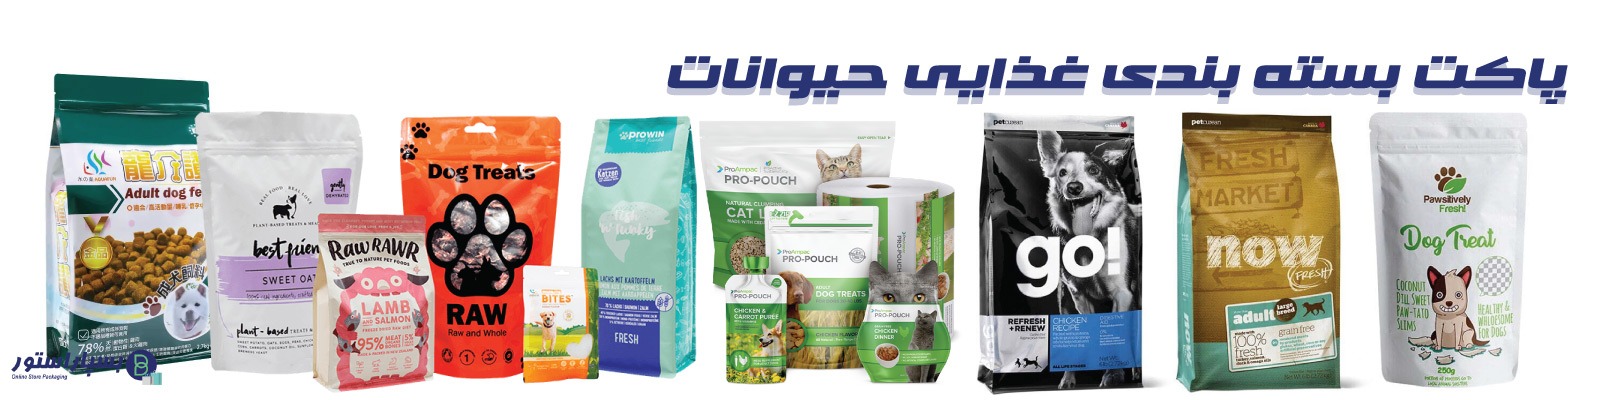 تولید کننده پاکت بسته بندی غذای حیوانات | تولید پاکت غذای سگ | تولید پاکت غذای گربه | تولید پاکت غذای ماهی | بسته بندی غذای سگ | بسته بندی غذای گربه | تولید پاکت غذای پرنده | بسته بندی غذای حیوانات | بسته بندی غذای سگ و گربه | تولید پاکت غذای ماهی